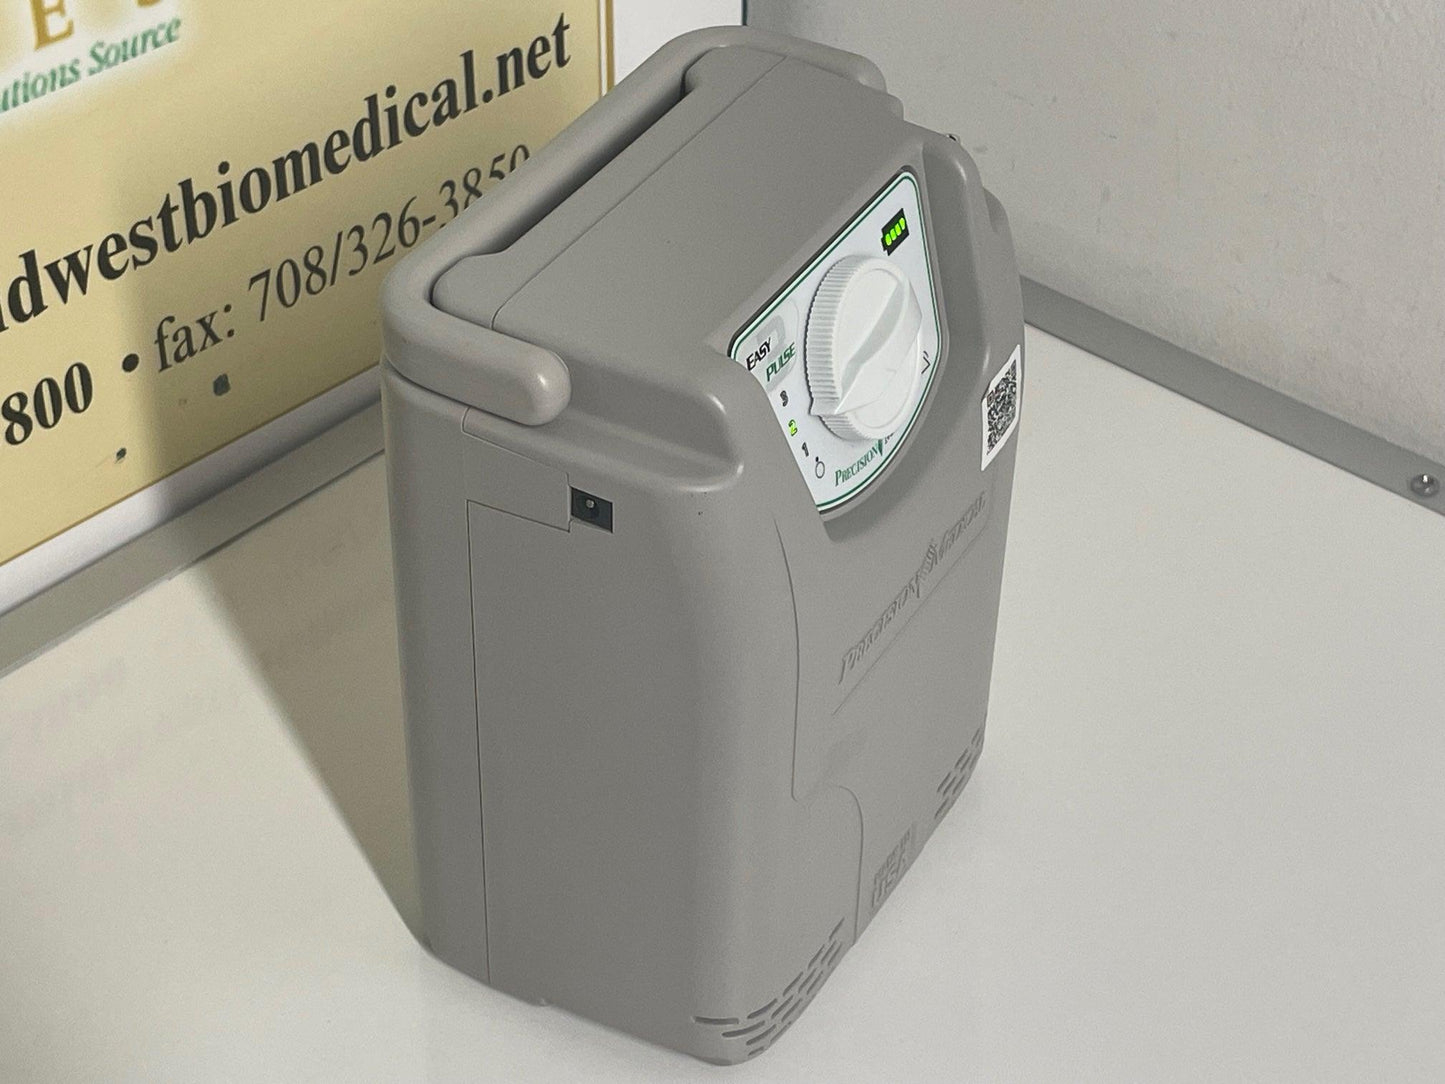 REFURBISHED POC3 EasyPulse 3 Liter Portable Oxygen Concentrator PM4130